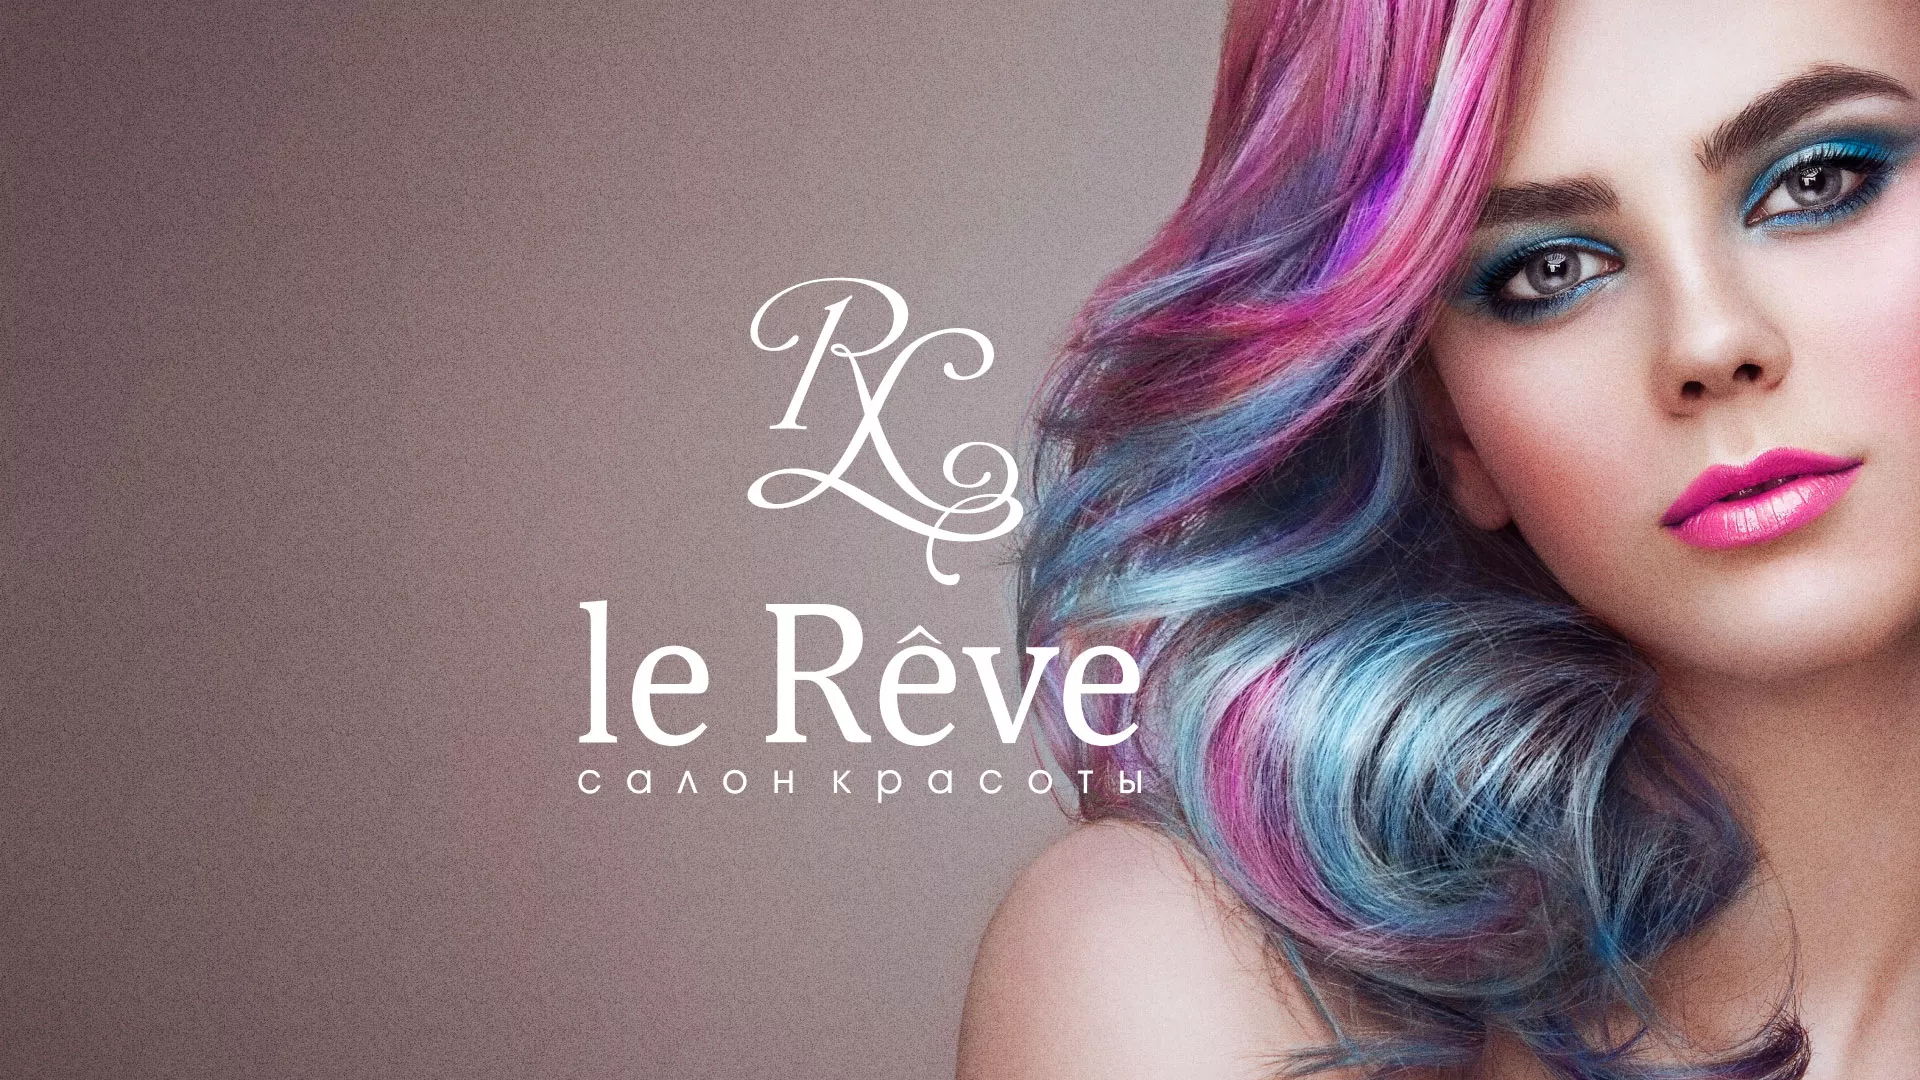 Создание сайта для салона красоты «Le Reve» в Таштаголе